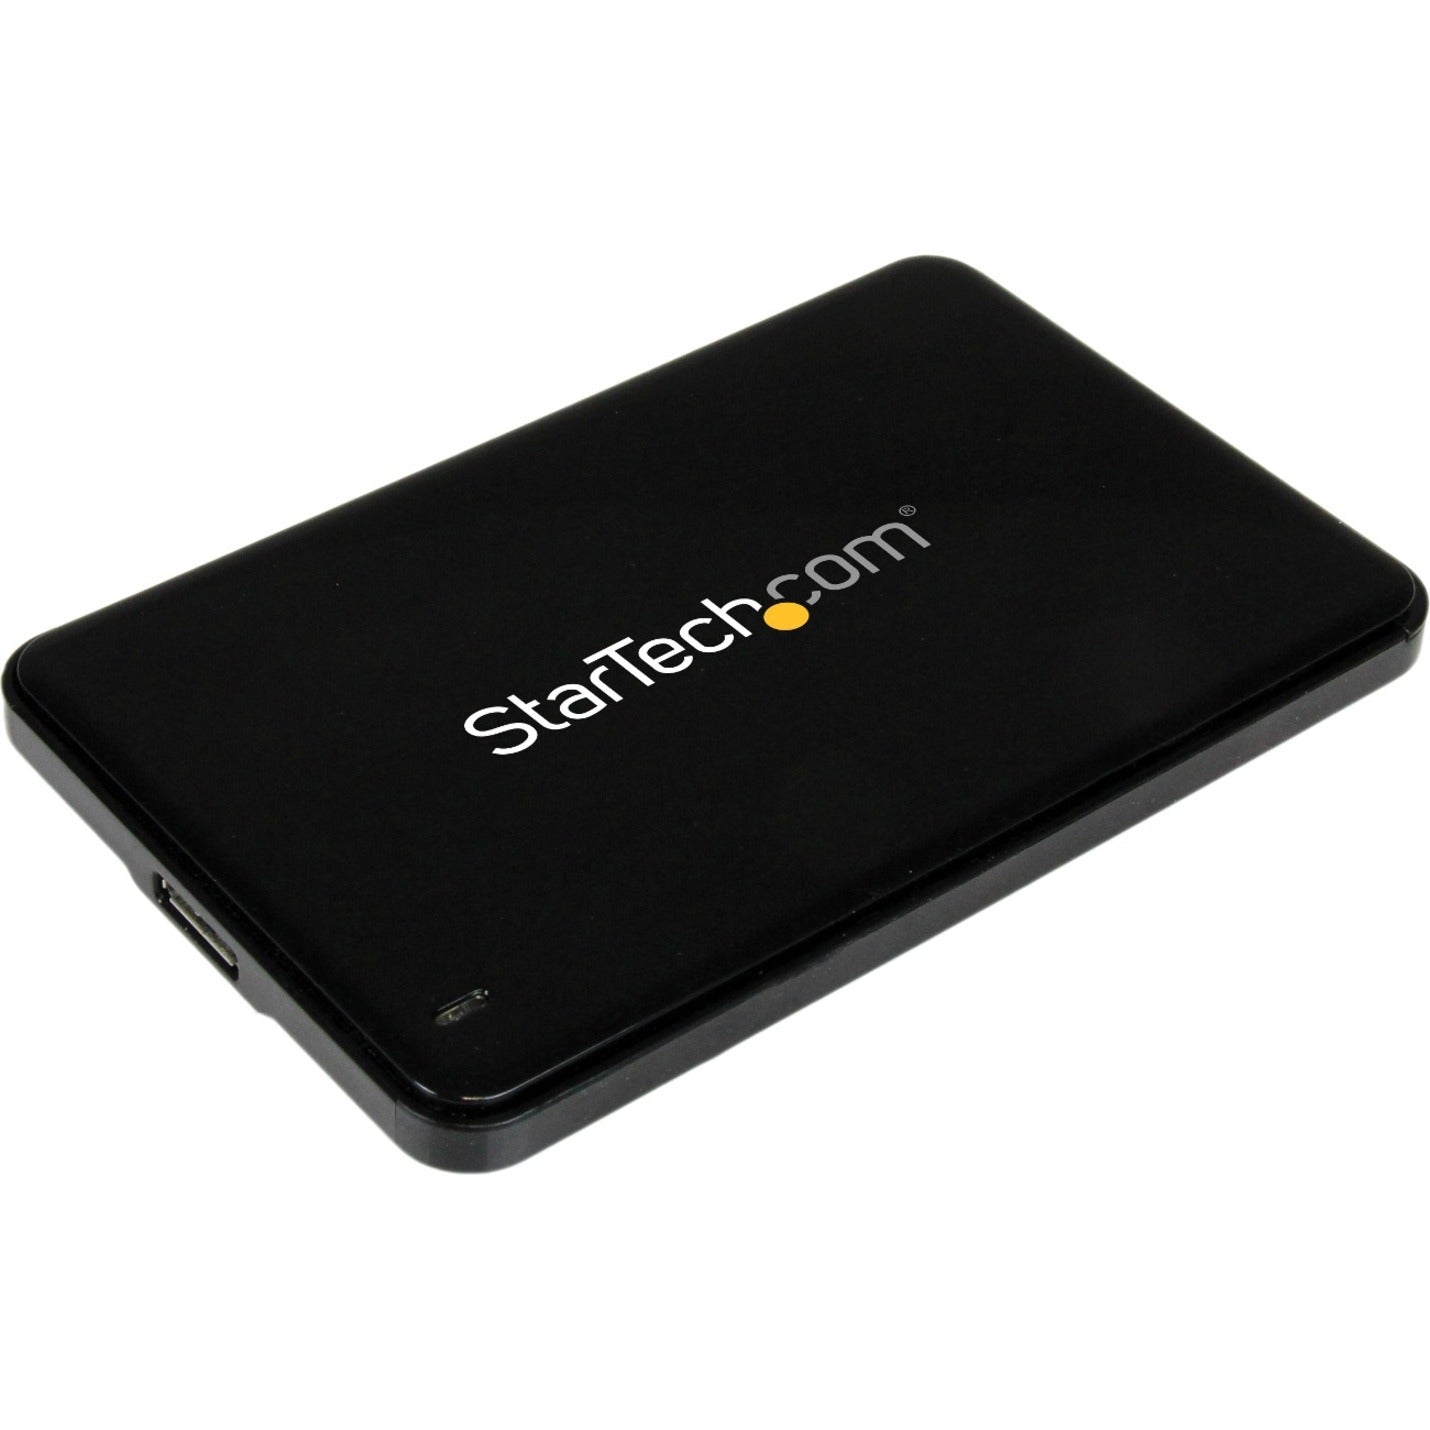 品牌: StarTech.com StarTech.com（星科技） S2510BPU337 2.5英寸 USB 3.0 SATA 硬盘盒带 UASP，超薄 7mm SATA III 固态硬盘/硬盘，快速数据传输